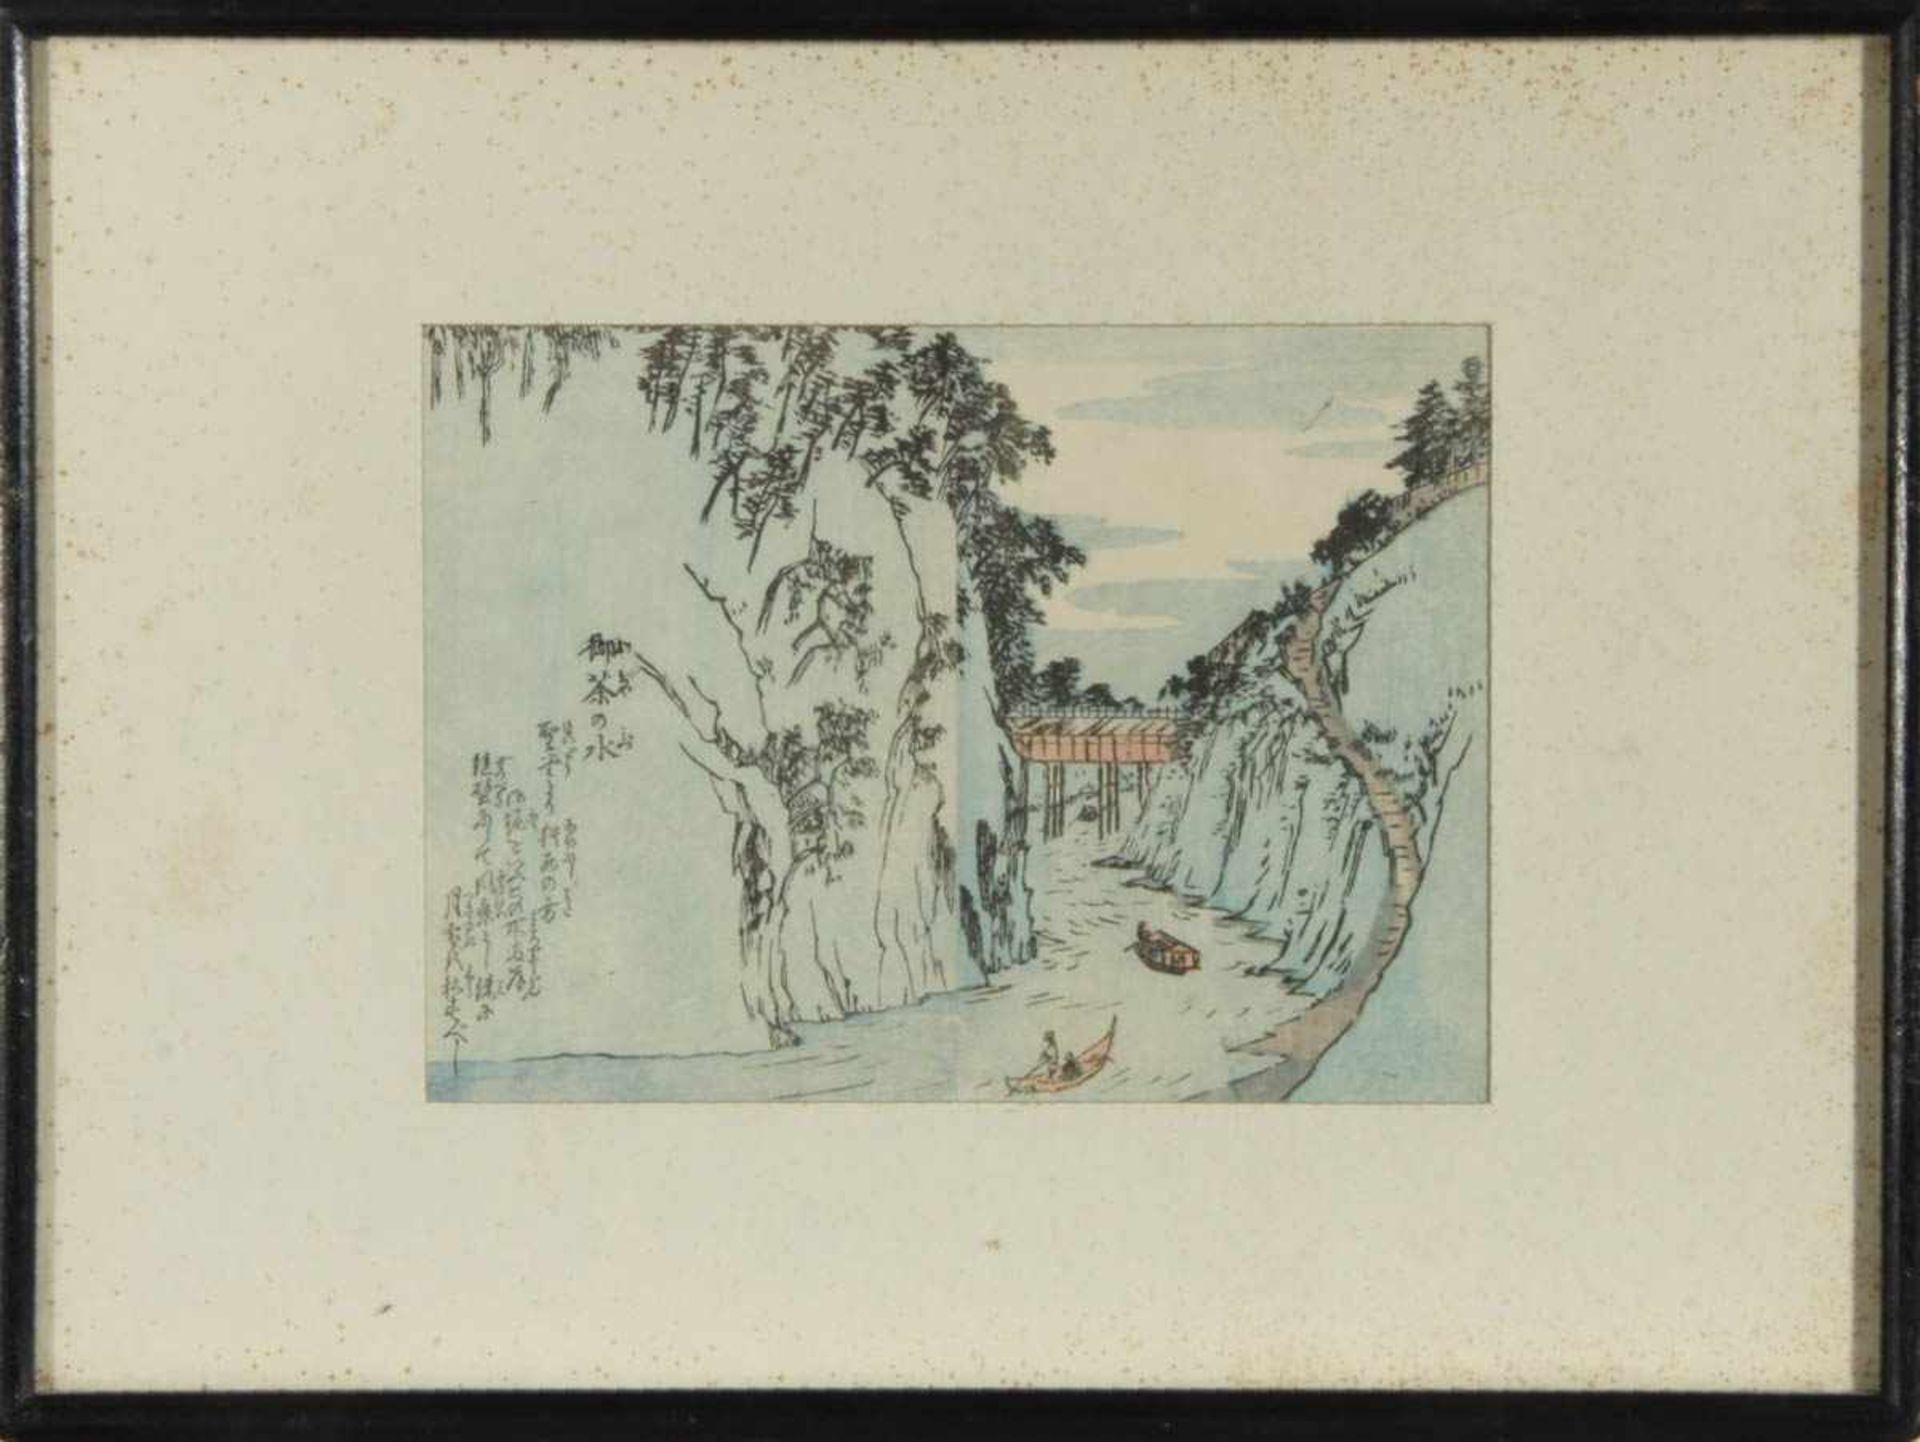 HiroshigeFarbholzschnitt von 1850. Blattgr.: 16 x 21 cm. Im Passepartout 26,5 x 36 cm unter Glas